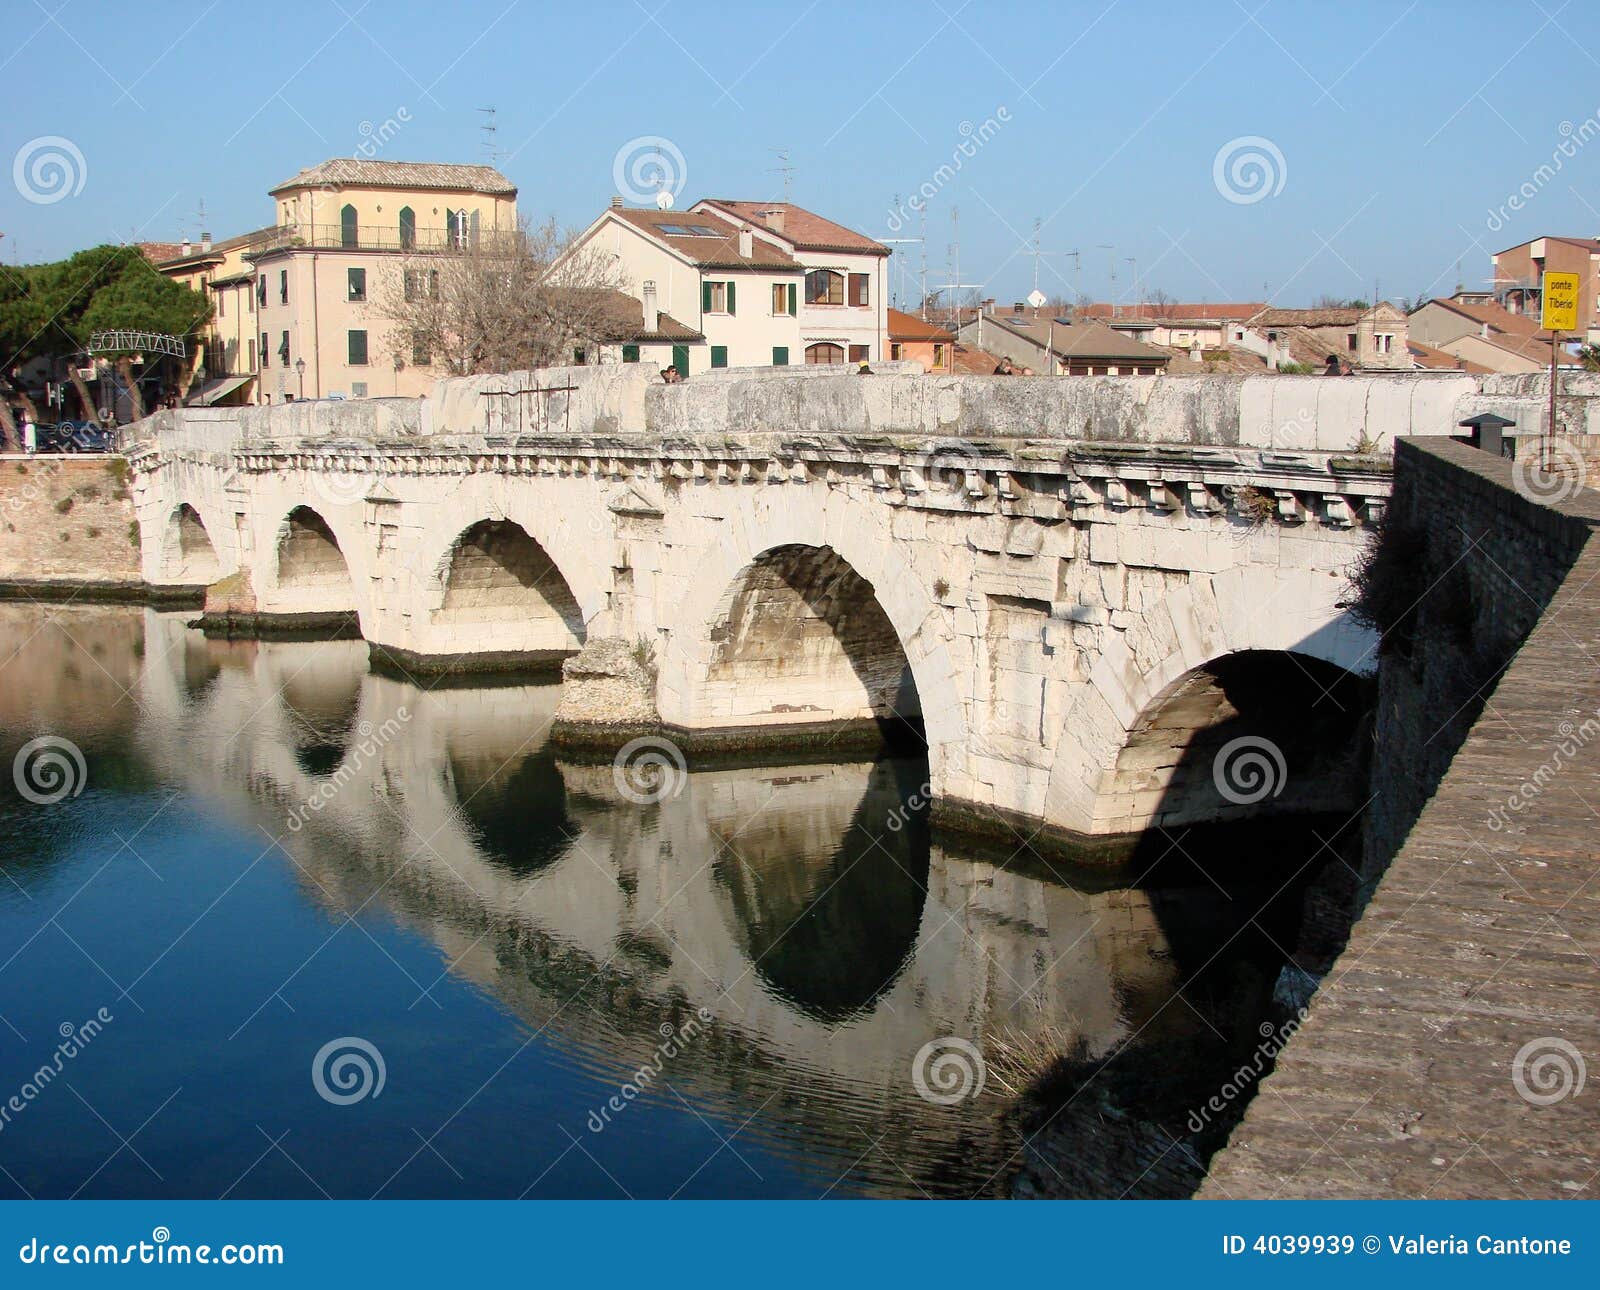 roman bridge in rimini